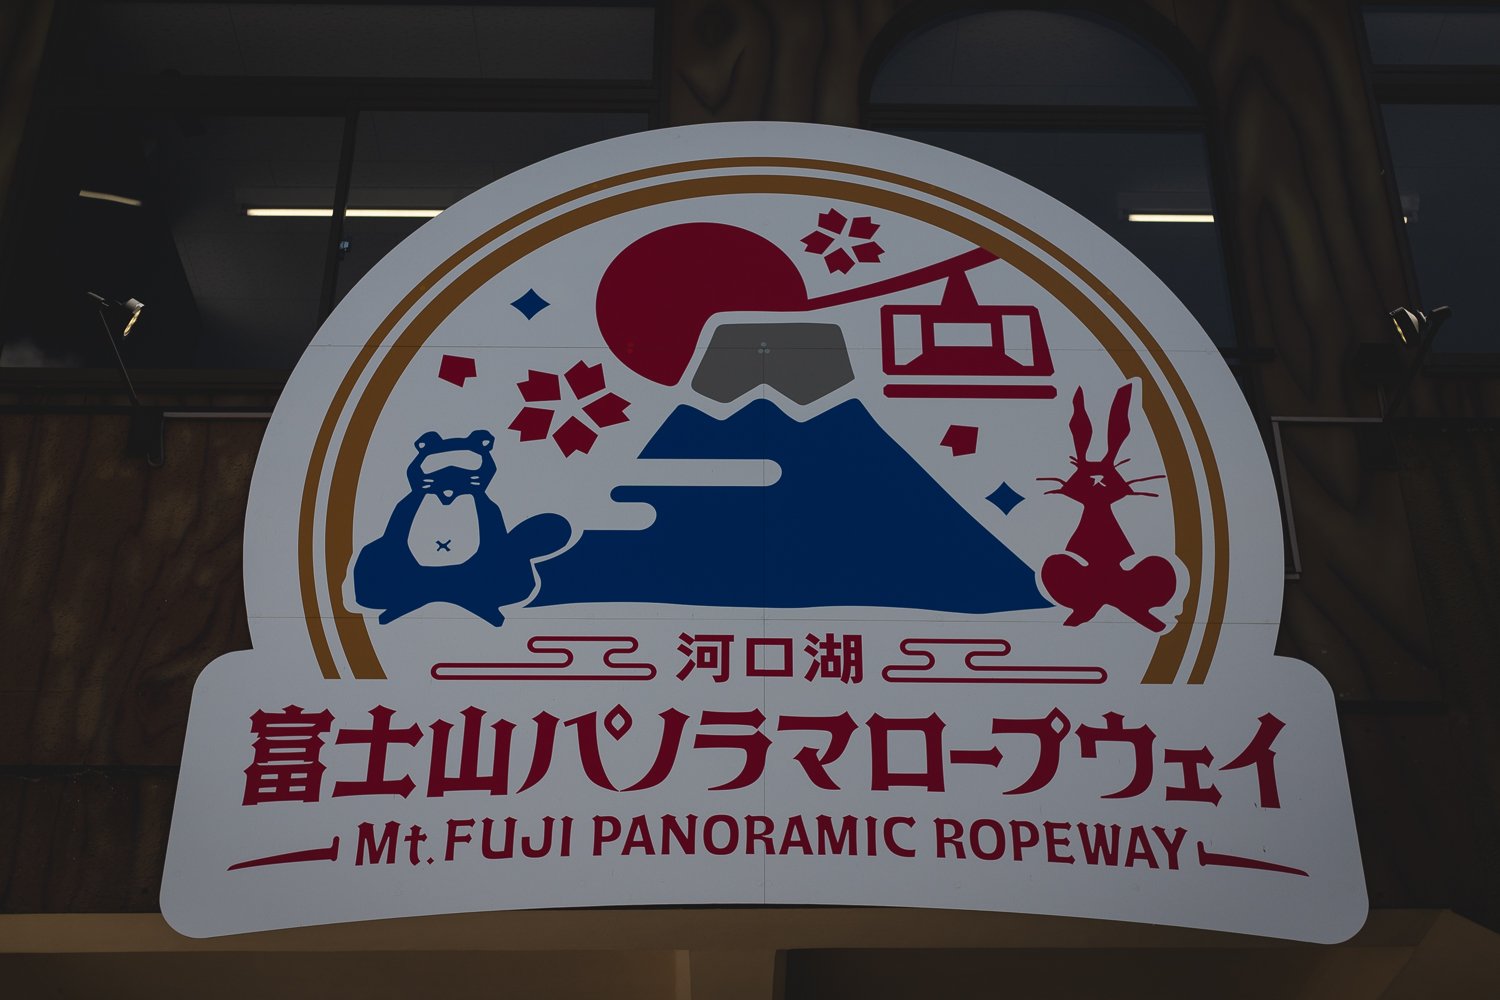 Signe à l'entrée du téléphérique. Un panneau présente une illustration en pictogrammes du le mont Fuji, un téléphérique, un castor, un lapin et deux fleurs de cerisier.  En dessous le texte en japonais et anglais indique le "Téléphérique du Mt. Fuji".